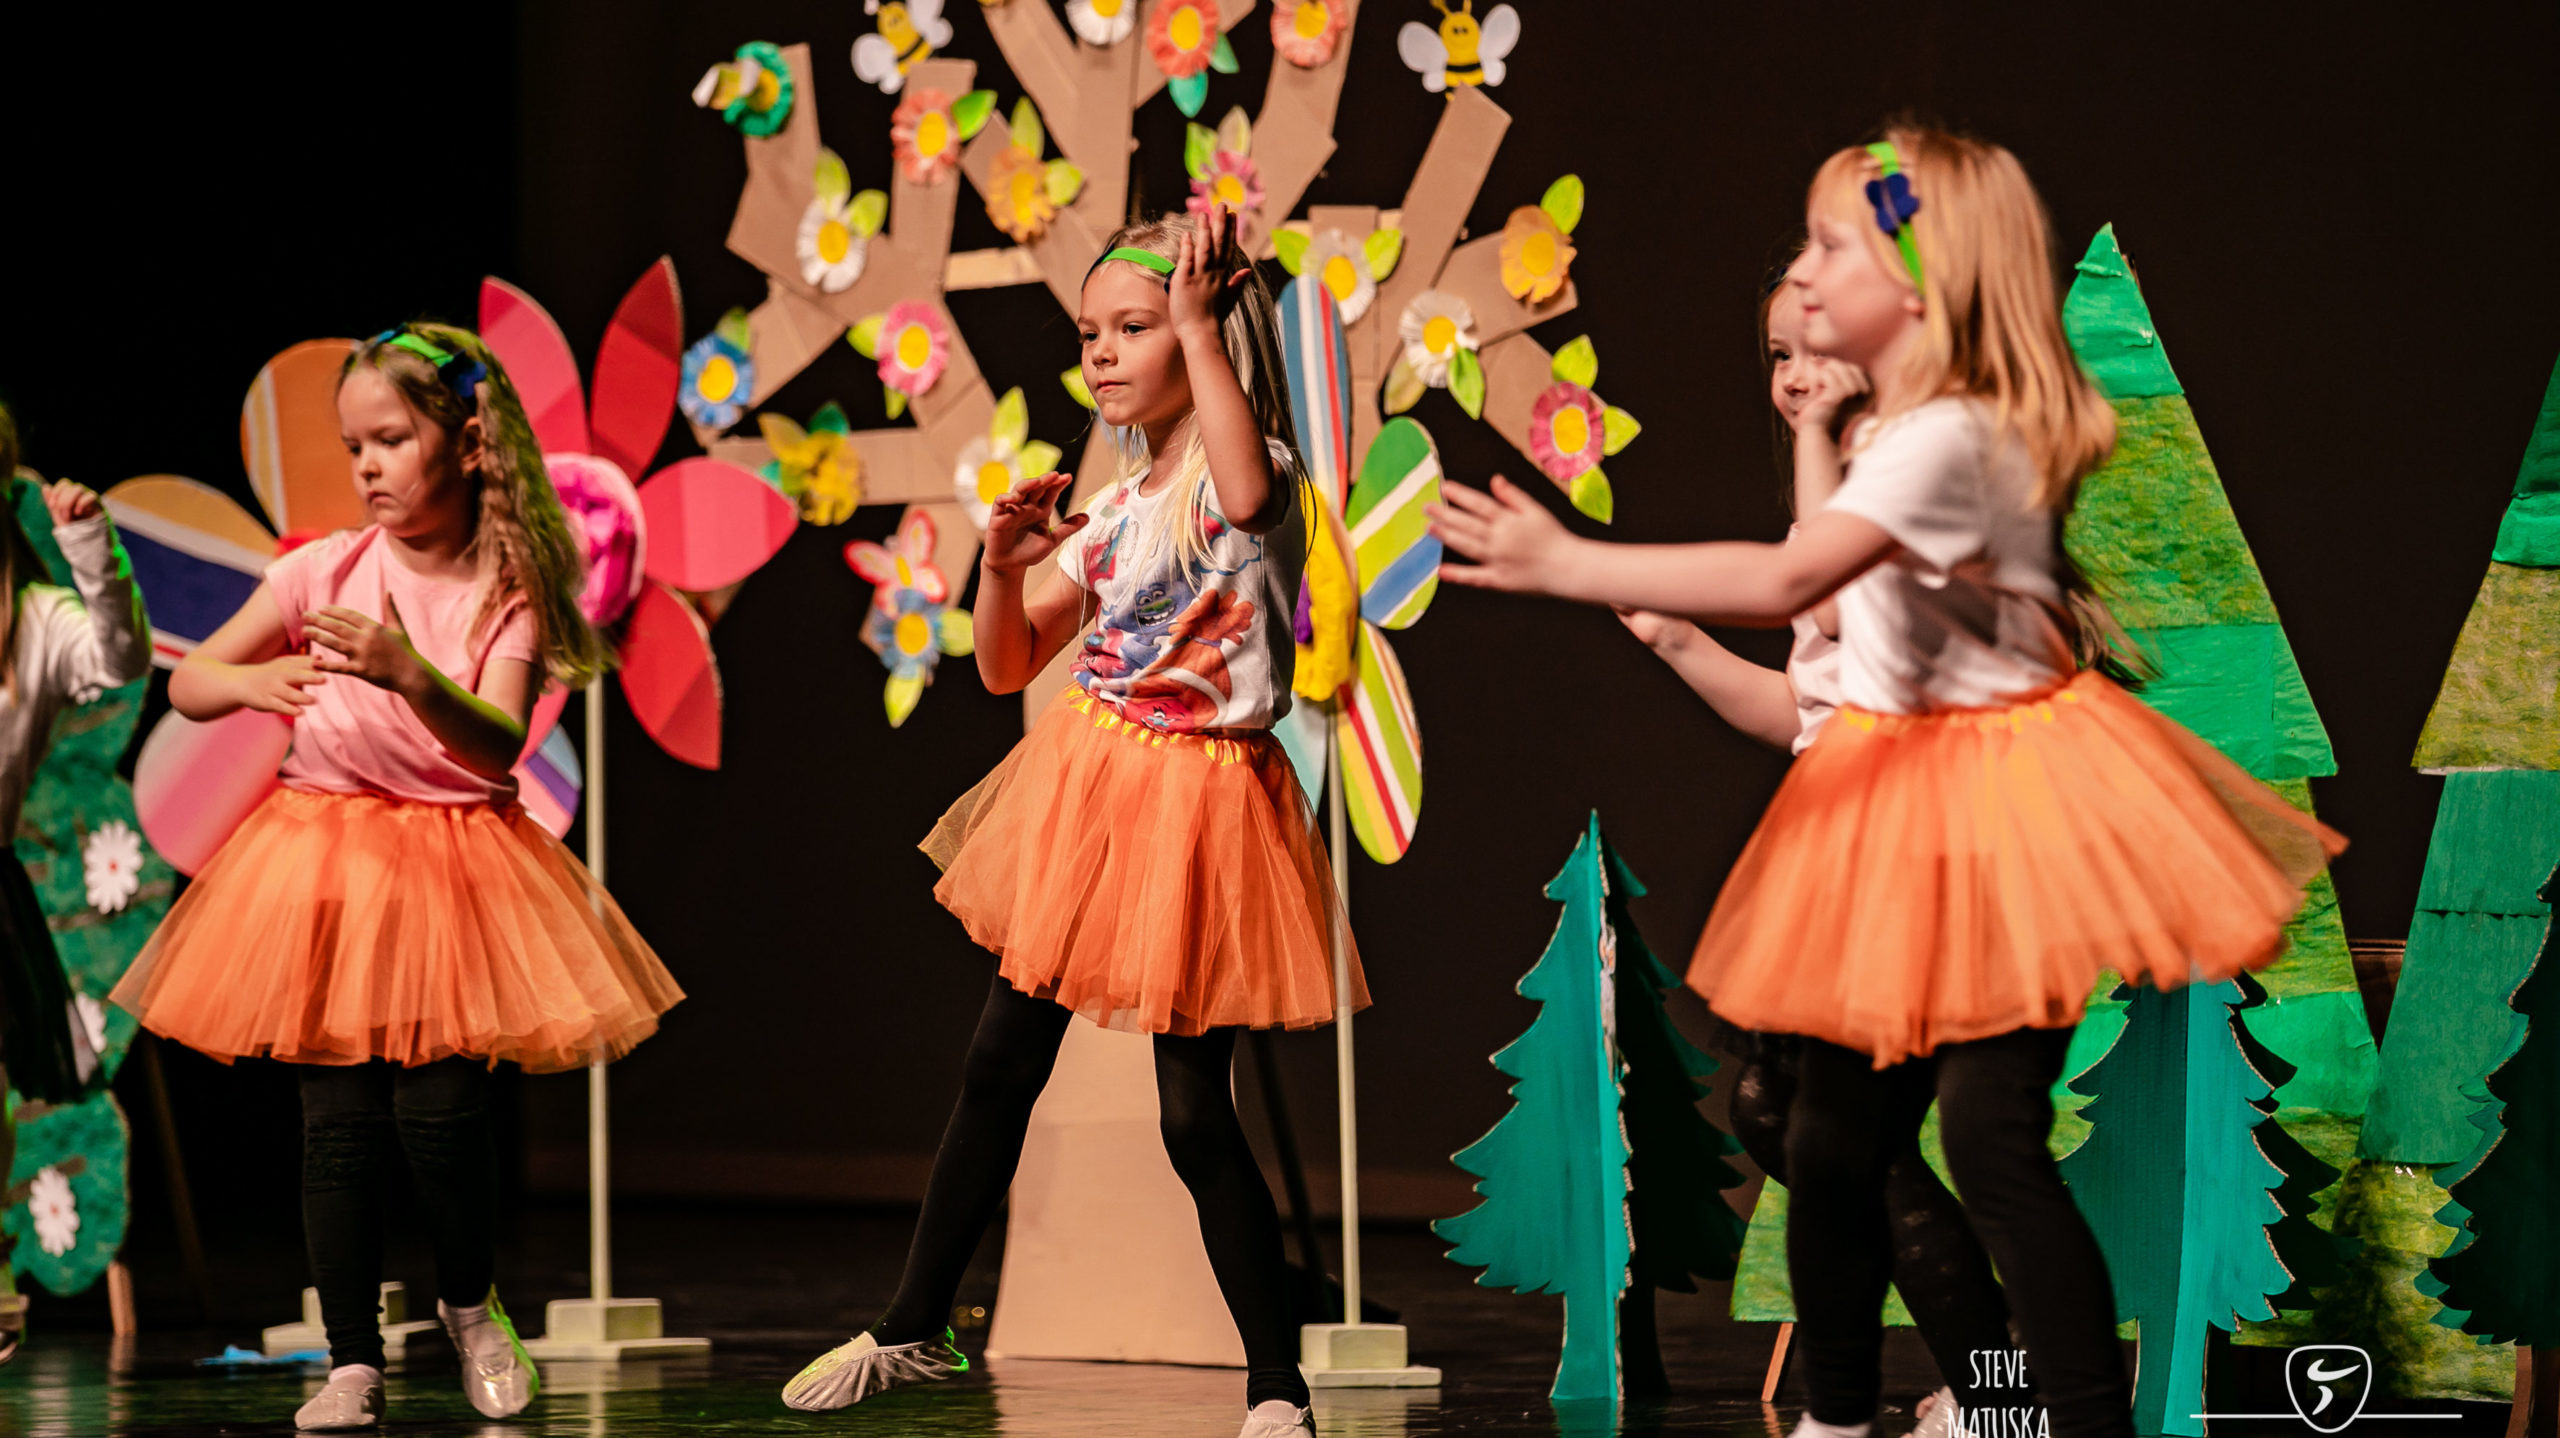 MikyDance je tanečná prípravka pre deti vo veku 5 rokov. Na krúžku sa deti zabavia, vytvoria si pozititívny vzťah k pohybu a rozvíjajú svoj talent.